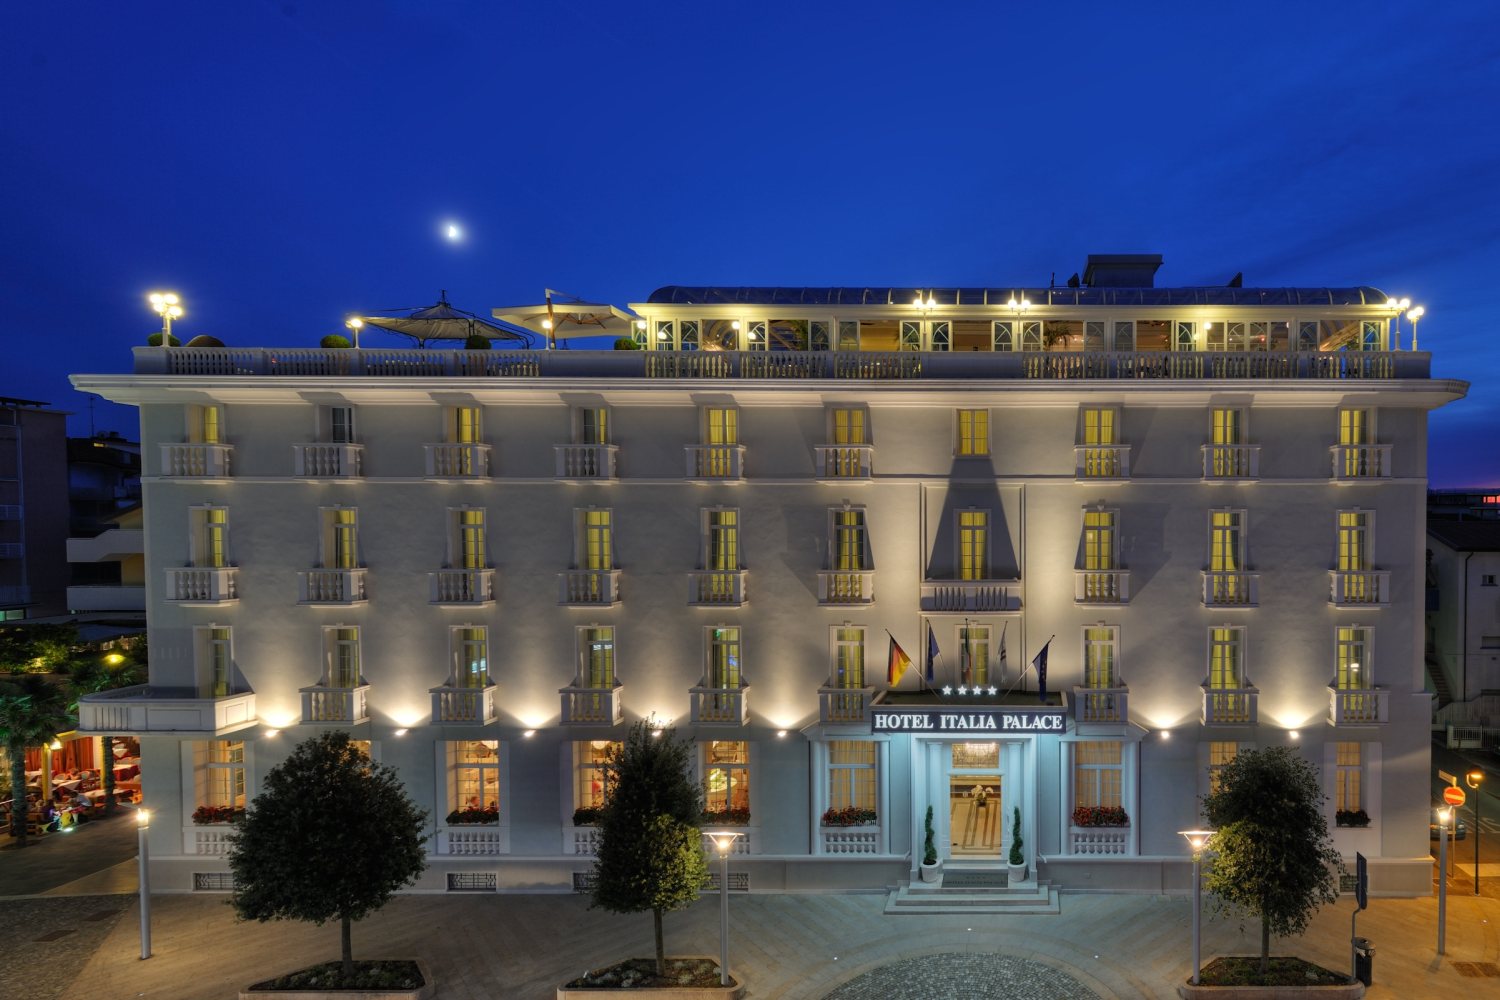 Hotel Italia Palace Lignano Sabbiadoro, Friuli - Italy